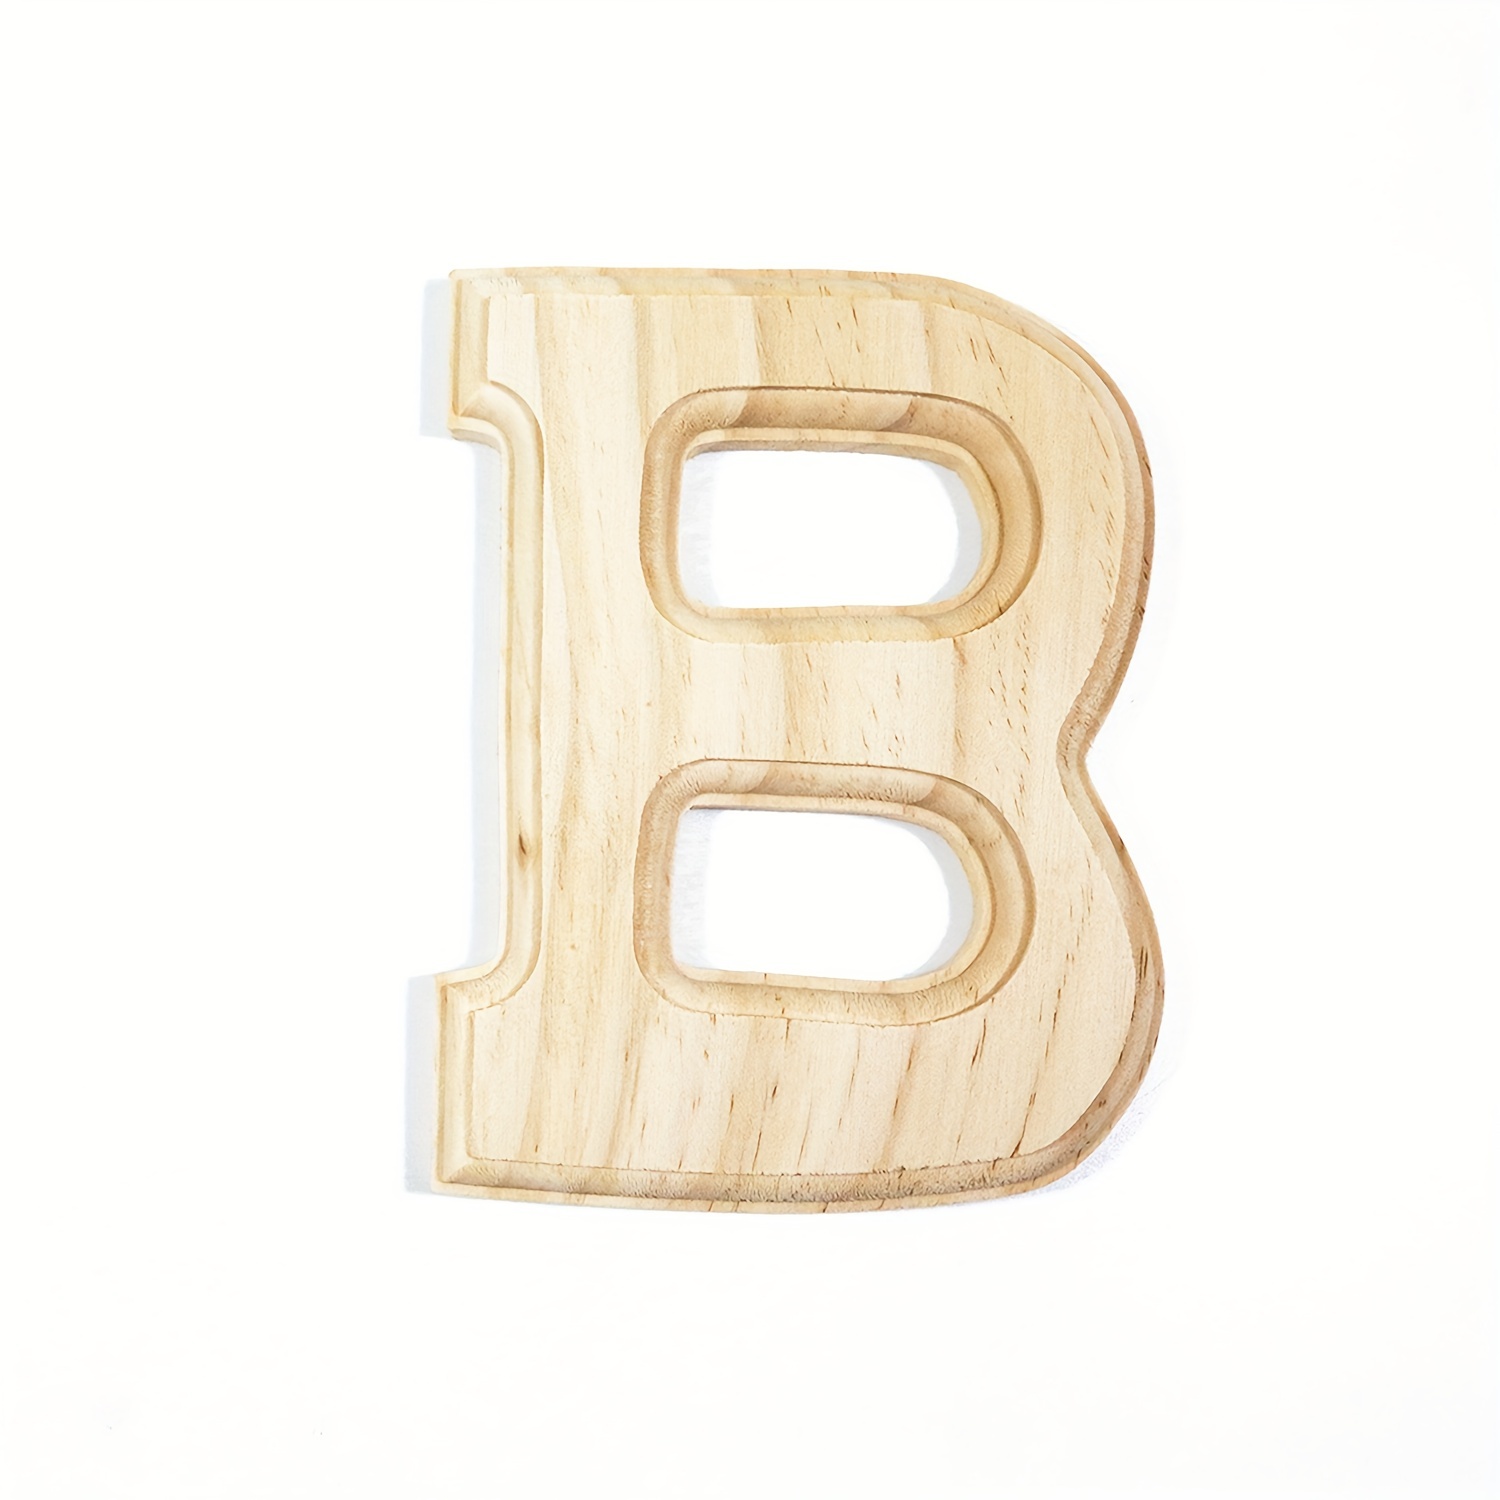 letras del alfabeto de madera de estilo rústico. Para las